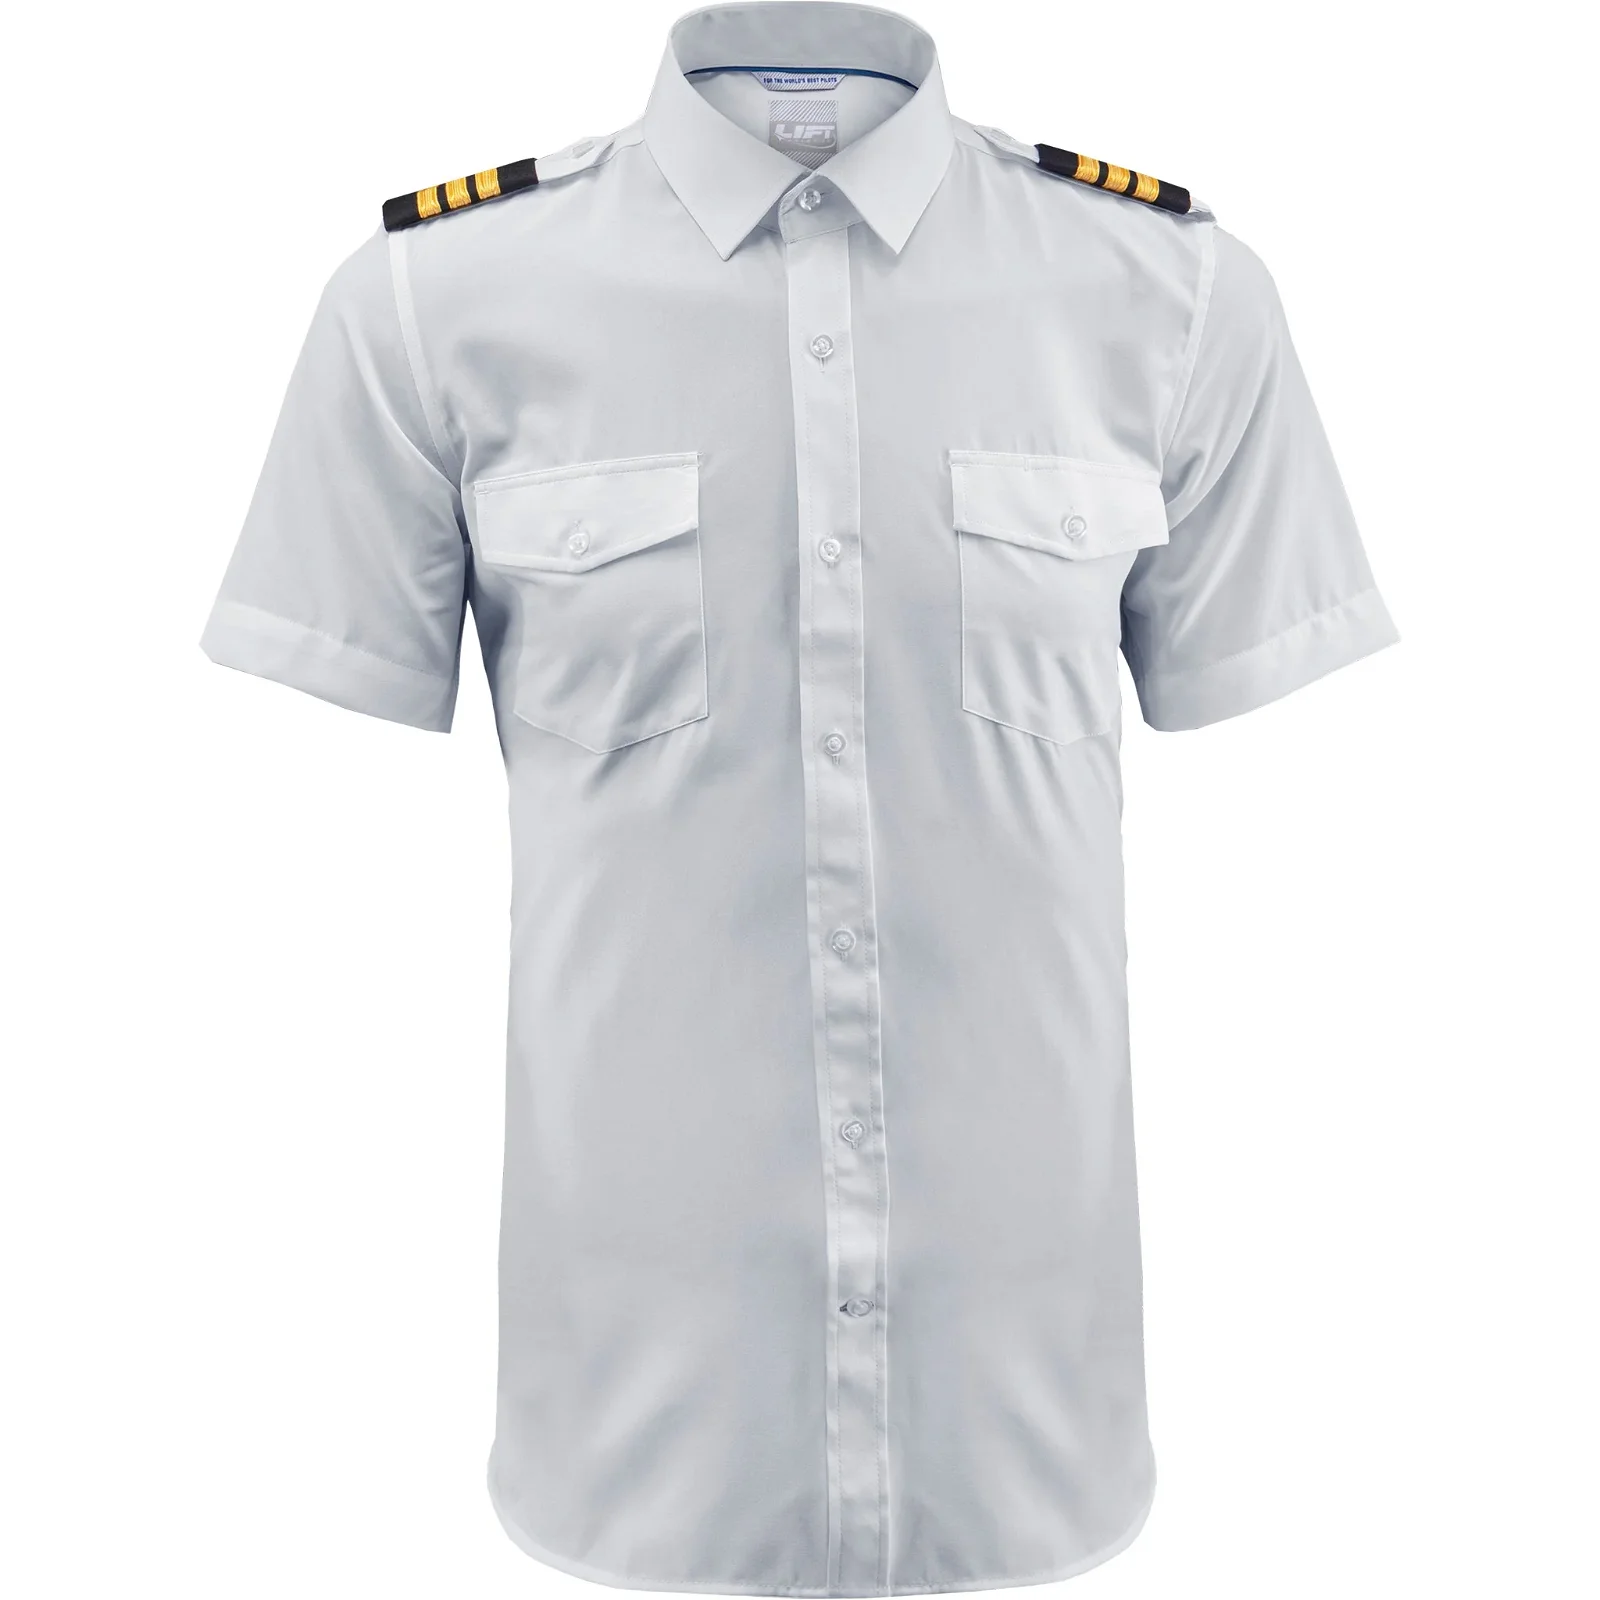 Image of Lift Aviation Flextech <br> Professional Pilot Short Sleeve Shirt